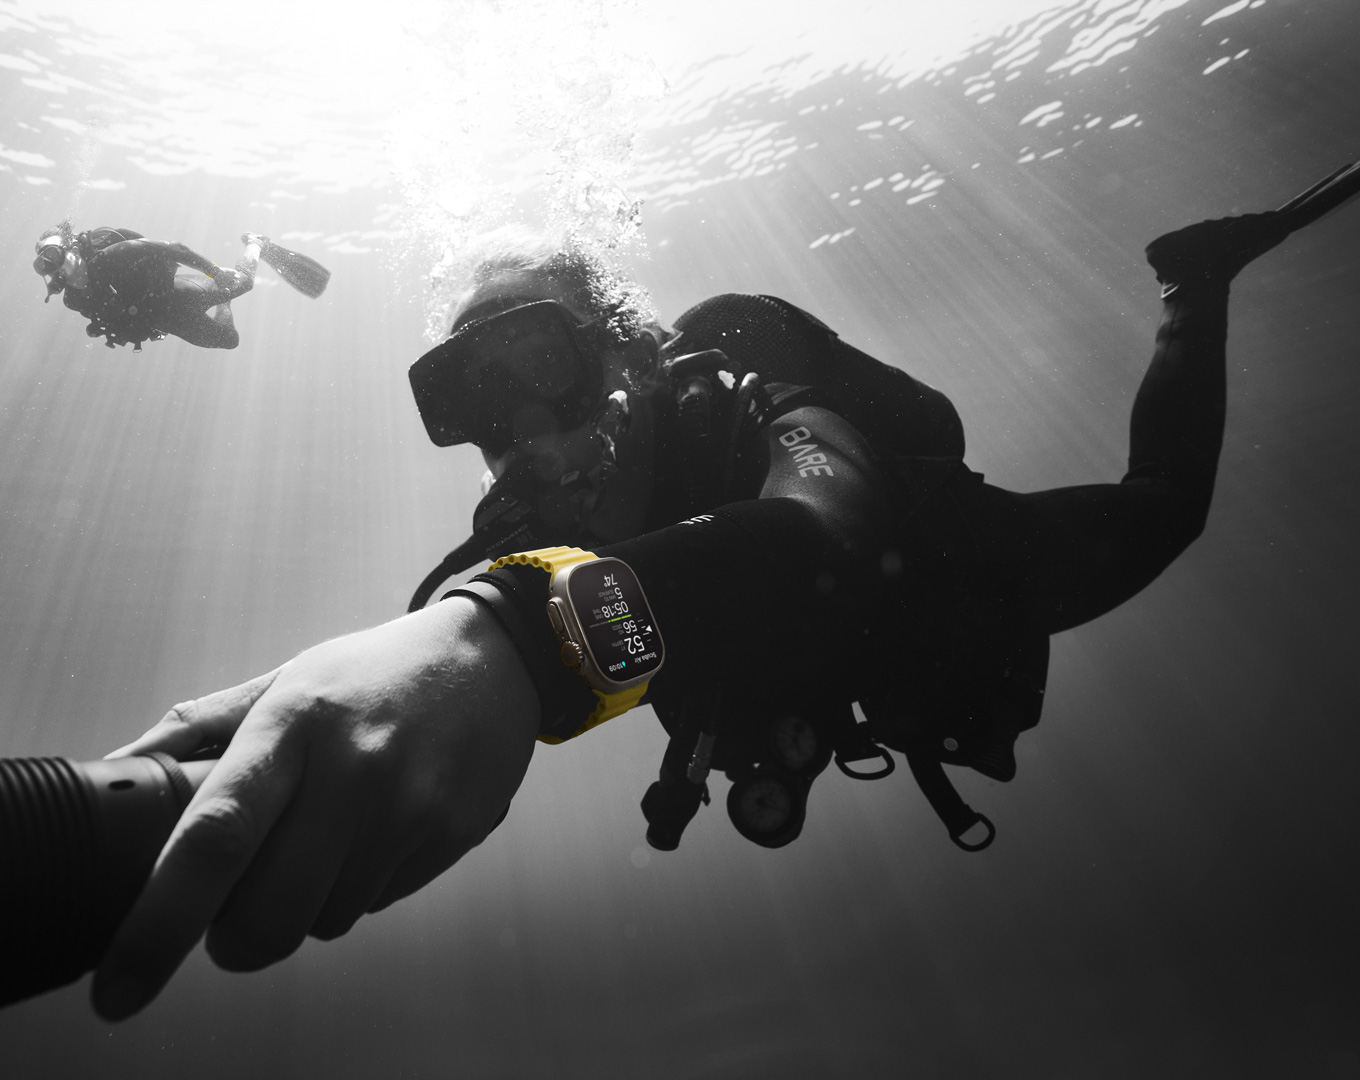 Thiết kế chống nước và chống va đập, Apple Watch Ultra có khả năng chịu được các hoạt động nước như jetski tại Maunalua Bay hoặc kitesurfing tại The Gorge. Nó còn cung cấp tính năng đo độ sâu và các chức năng cần thiết cho những người dùng scuba diving khi chiếm độ sâu đến 40m.